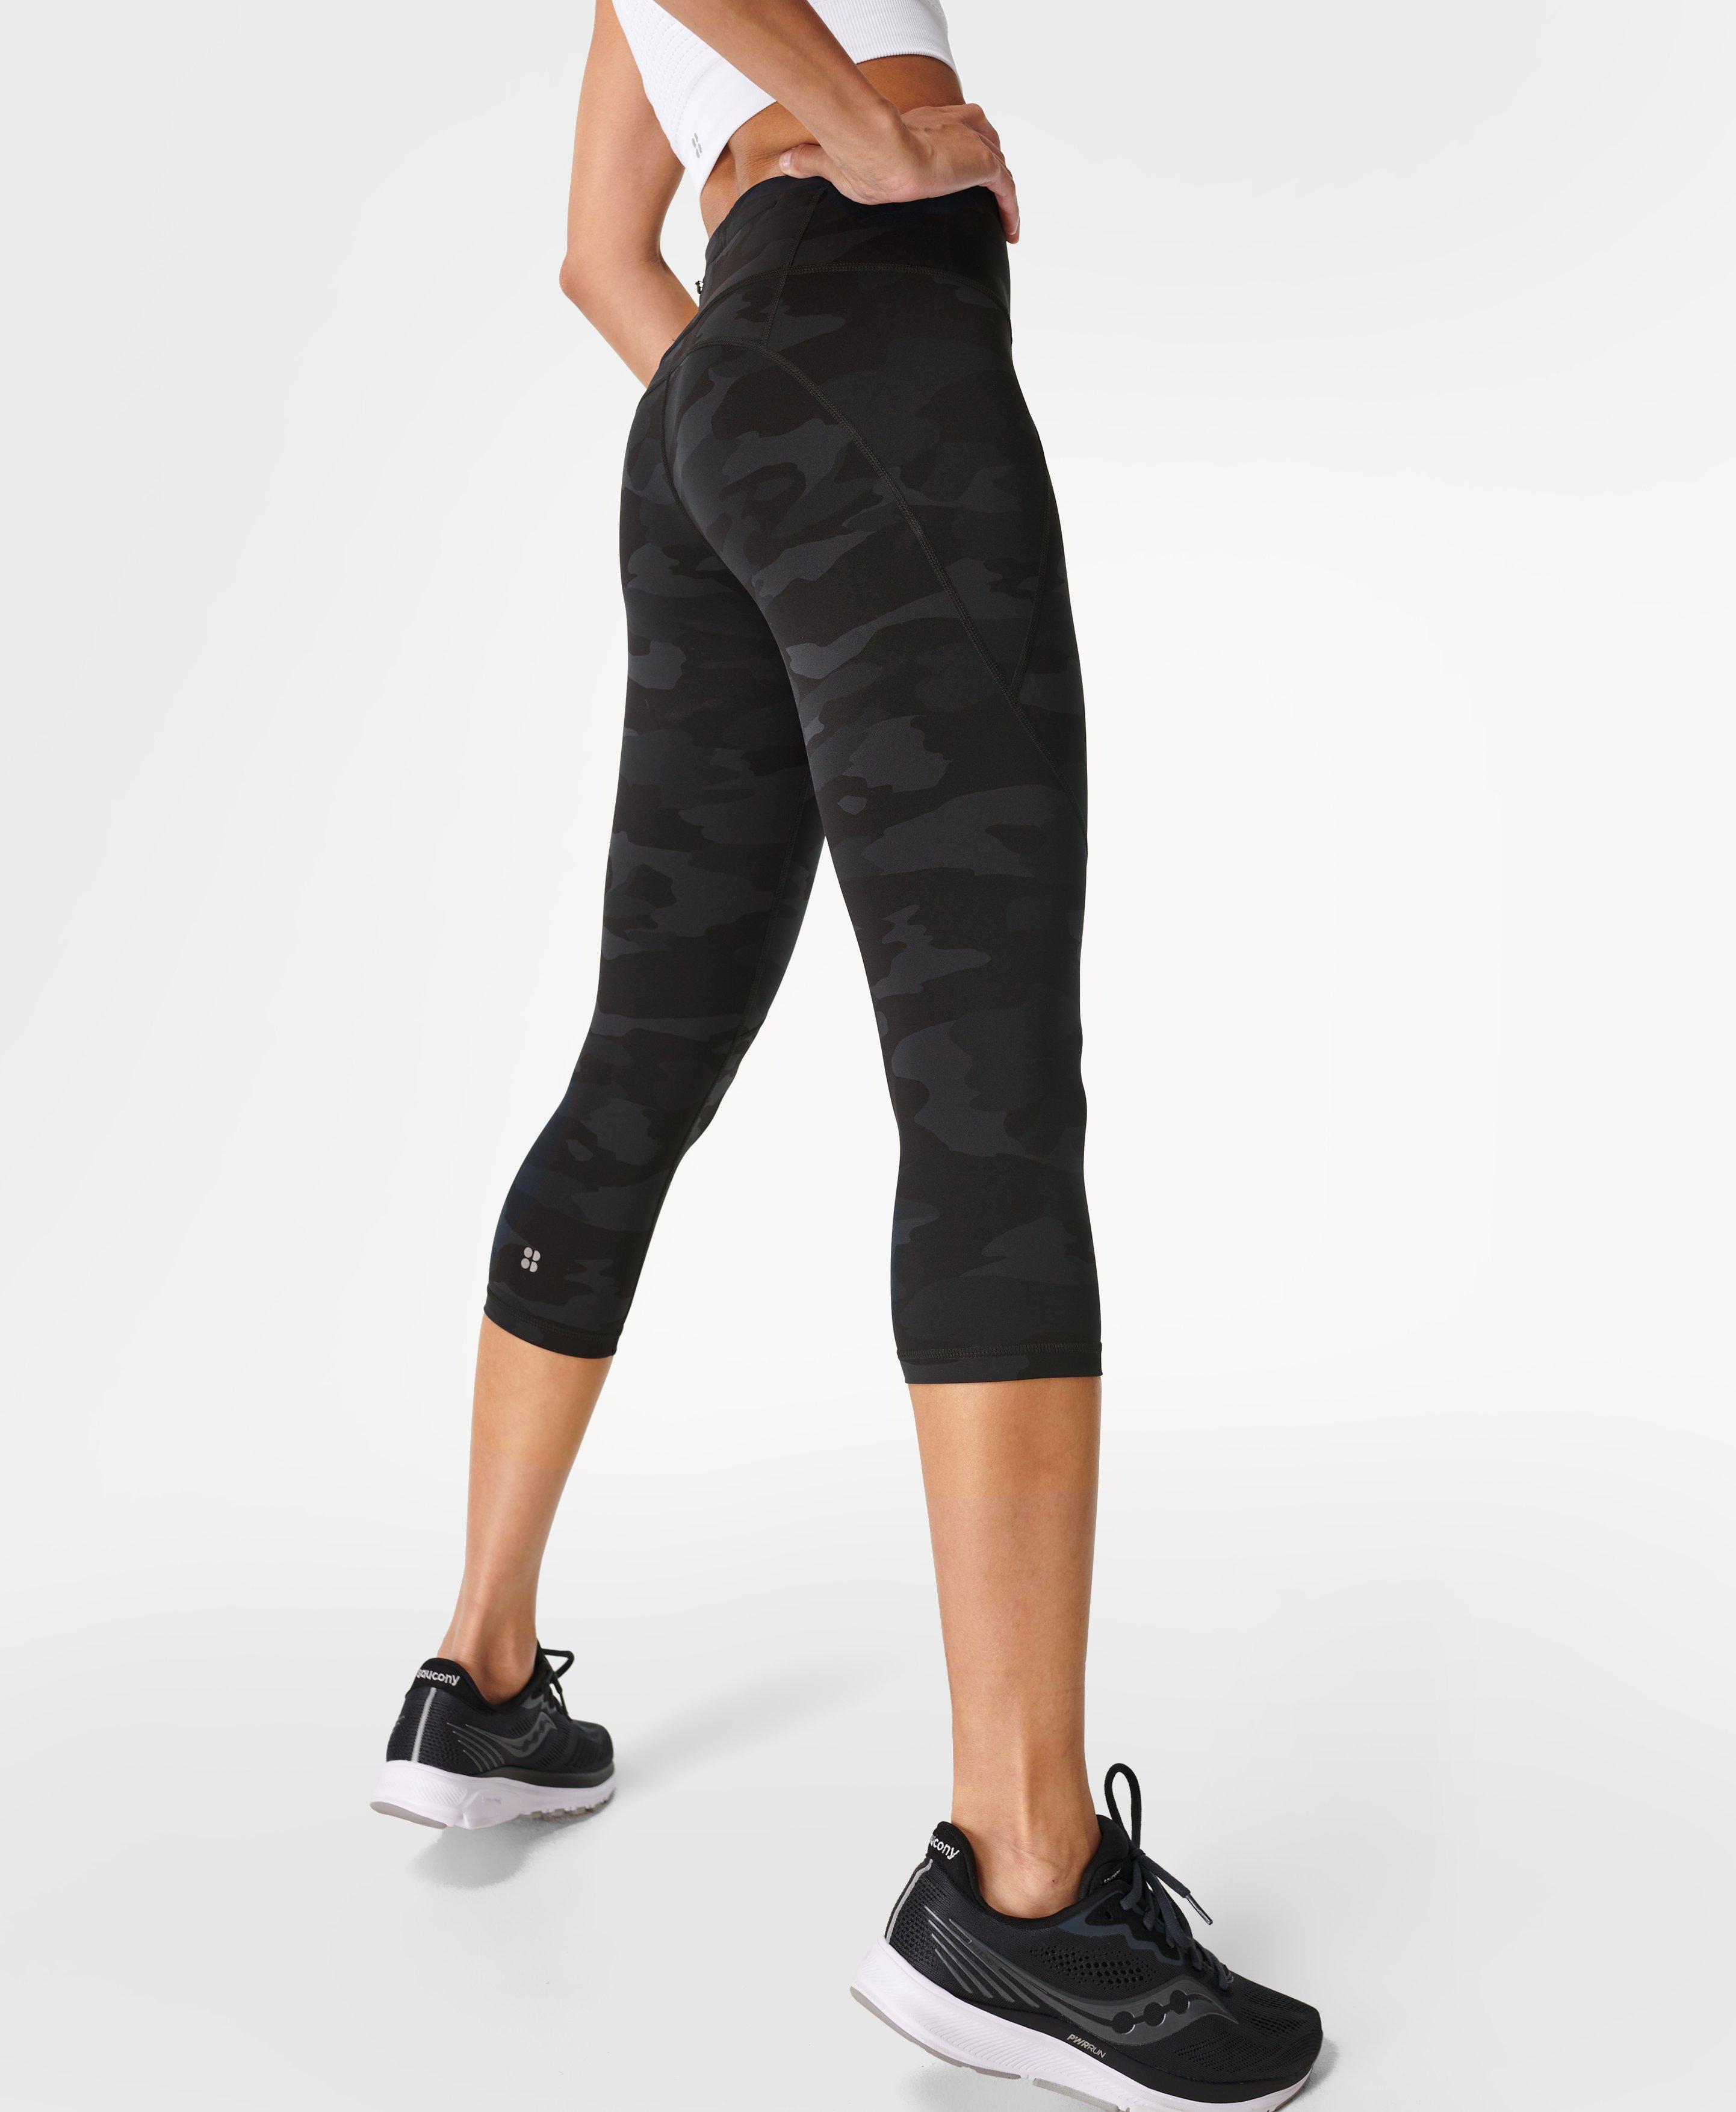 Women's SPORT Crop Ultra-Dry Leggings - Women's Pants & Leggings